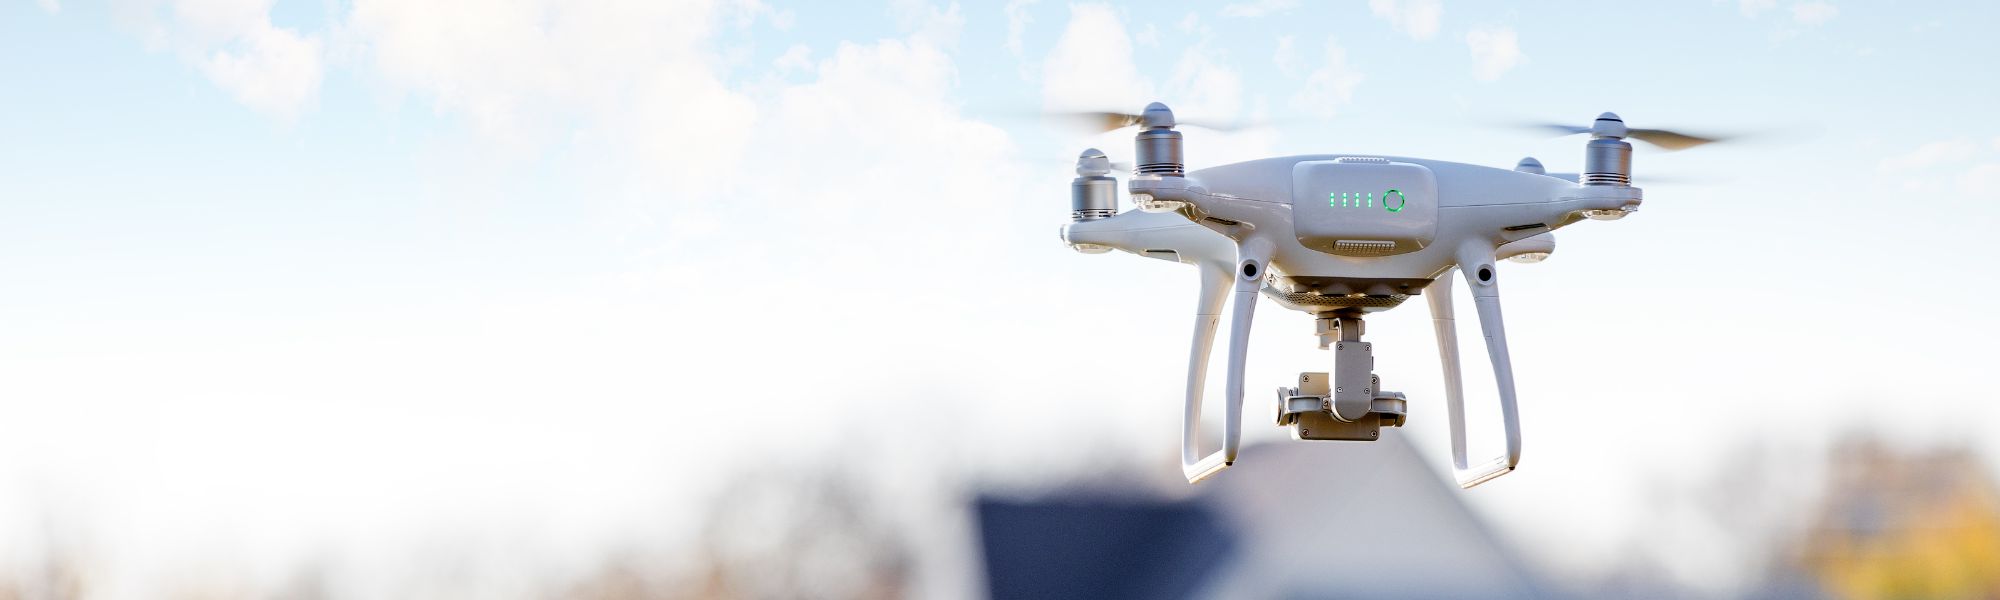 Drone flying over a neighborhood.